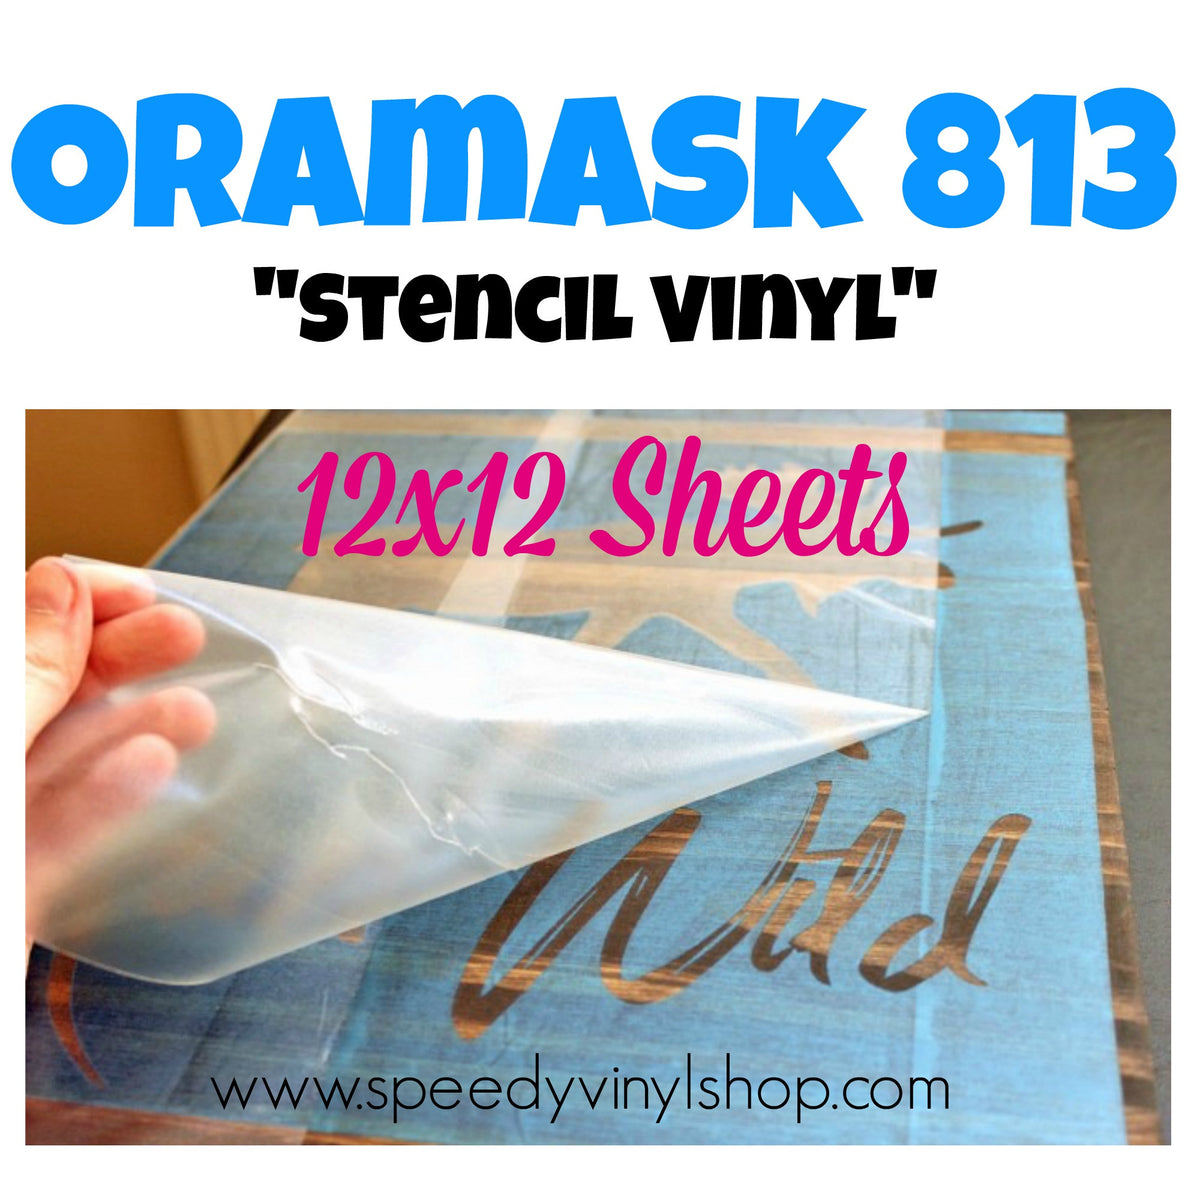 Oramask Stencil Film Vinyl